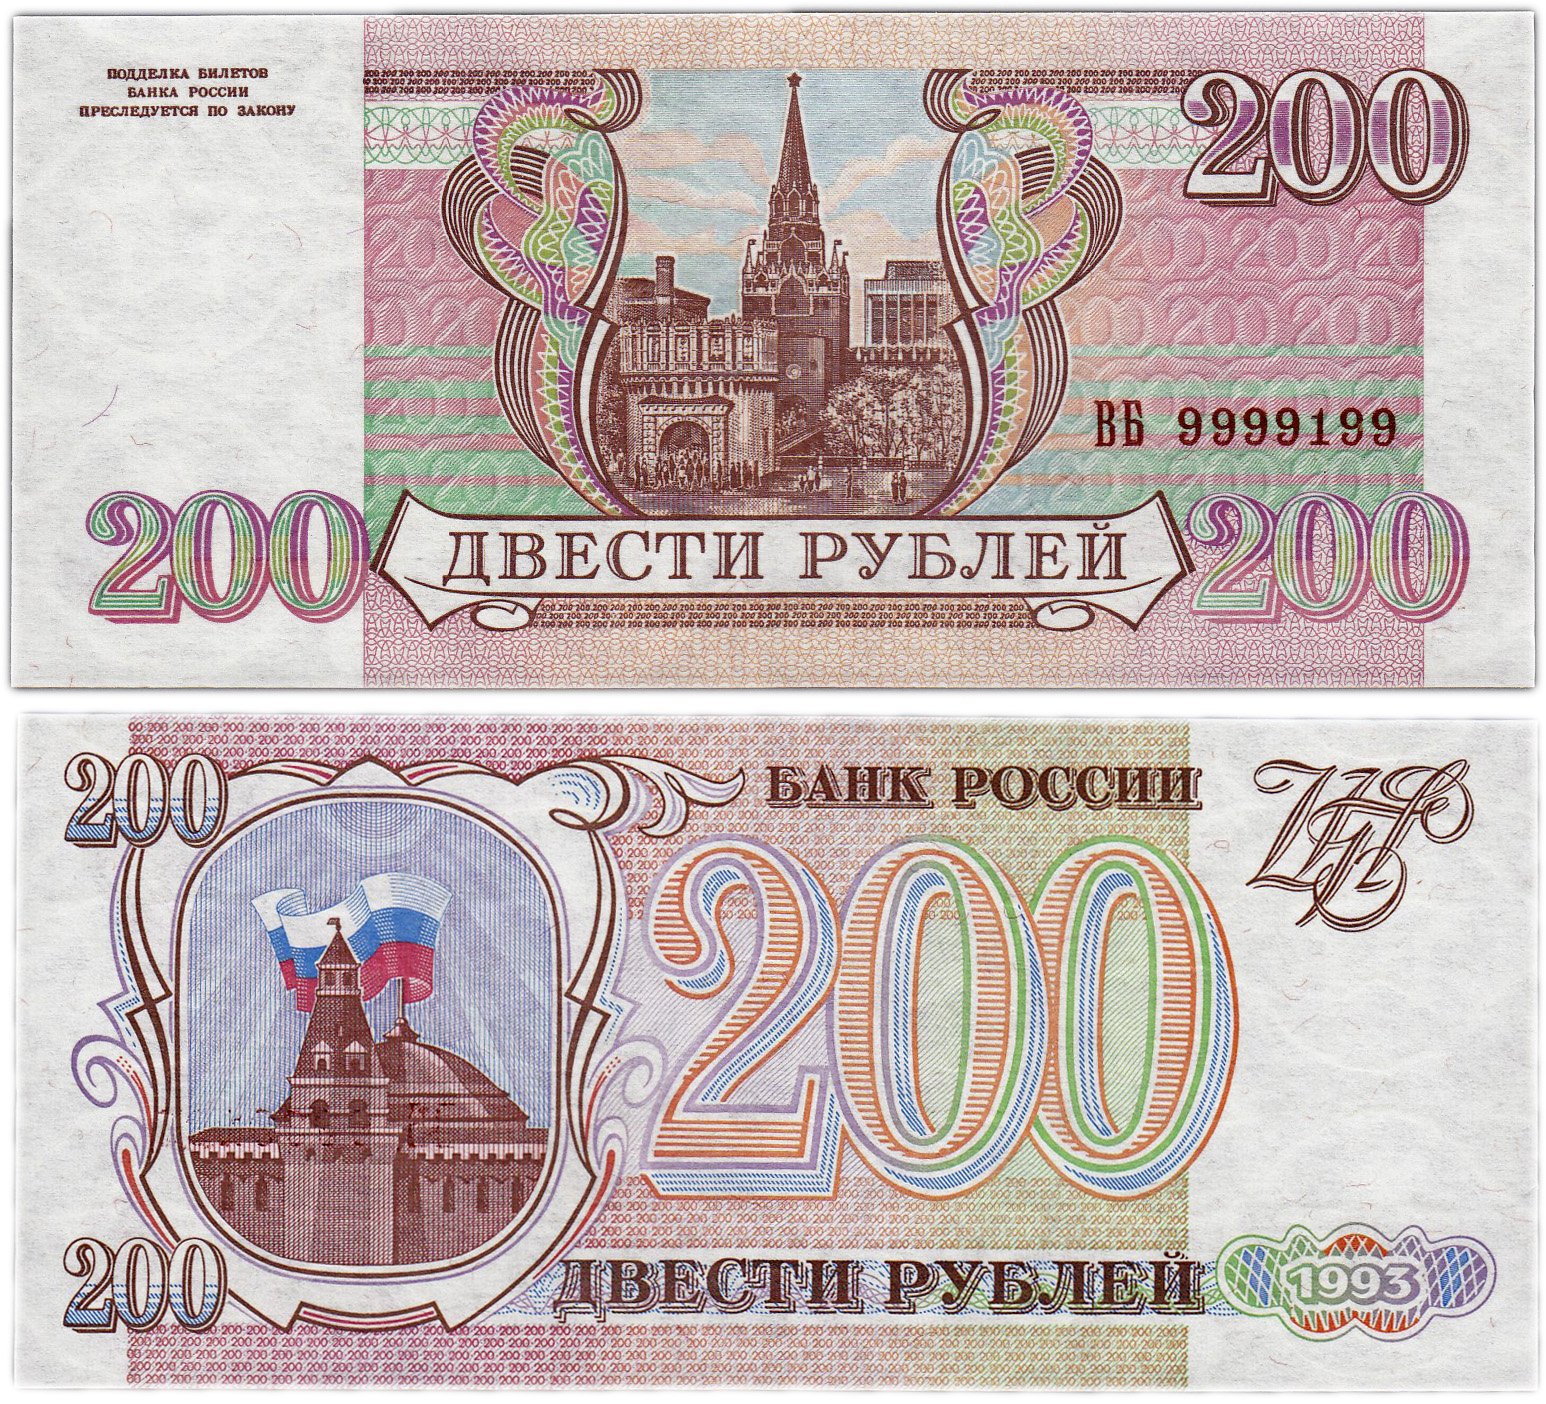 500 в русские рубли. 200 Рублей 1995. Двести рублей купюра 1993. Российские рубли 1993 года. Банкнота 200 рублей 1995.